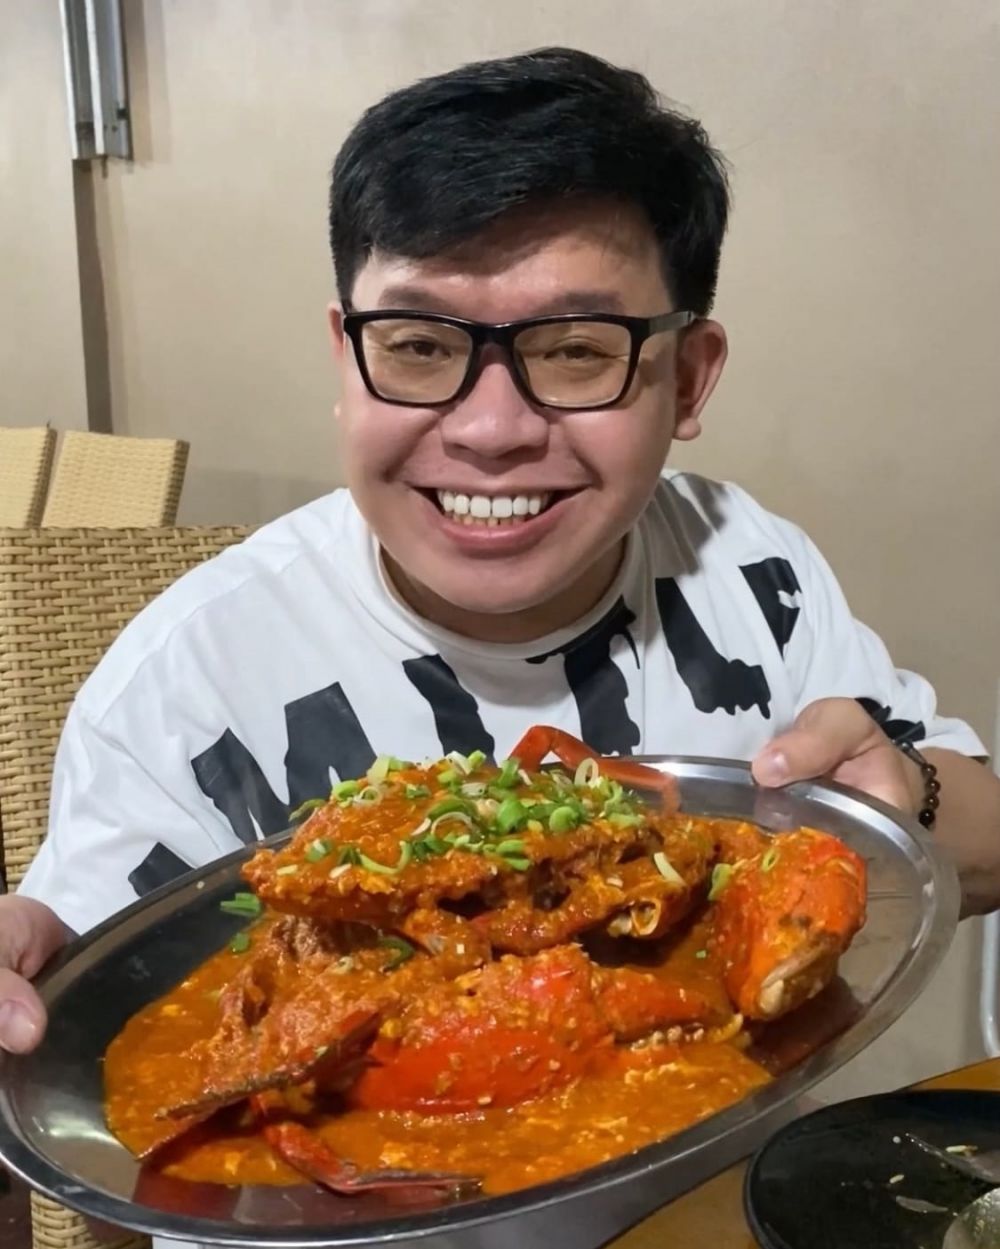 Mengenal Erwin Putra, food vlogger yang pernah obesitas dan keracunan 